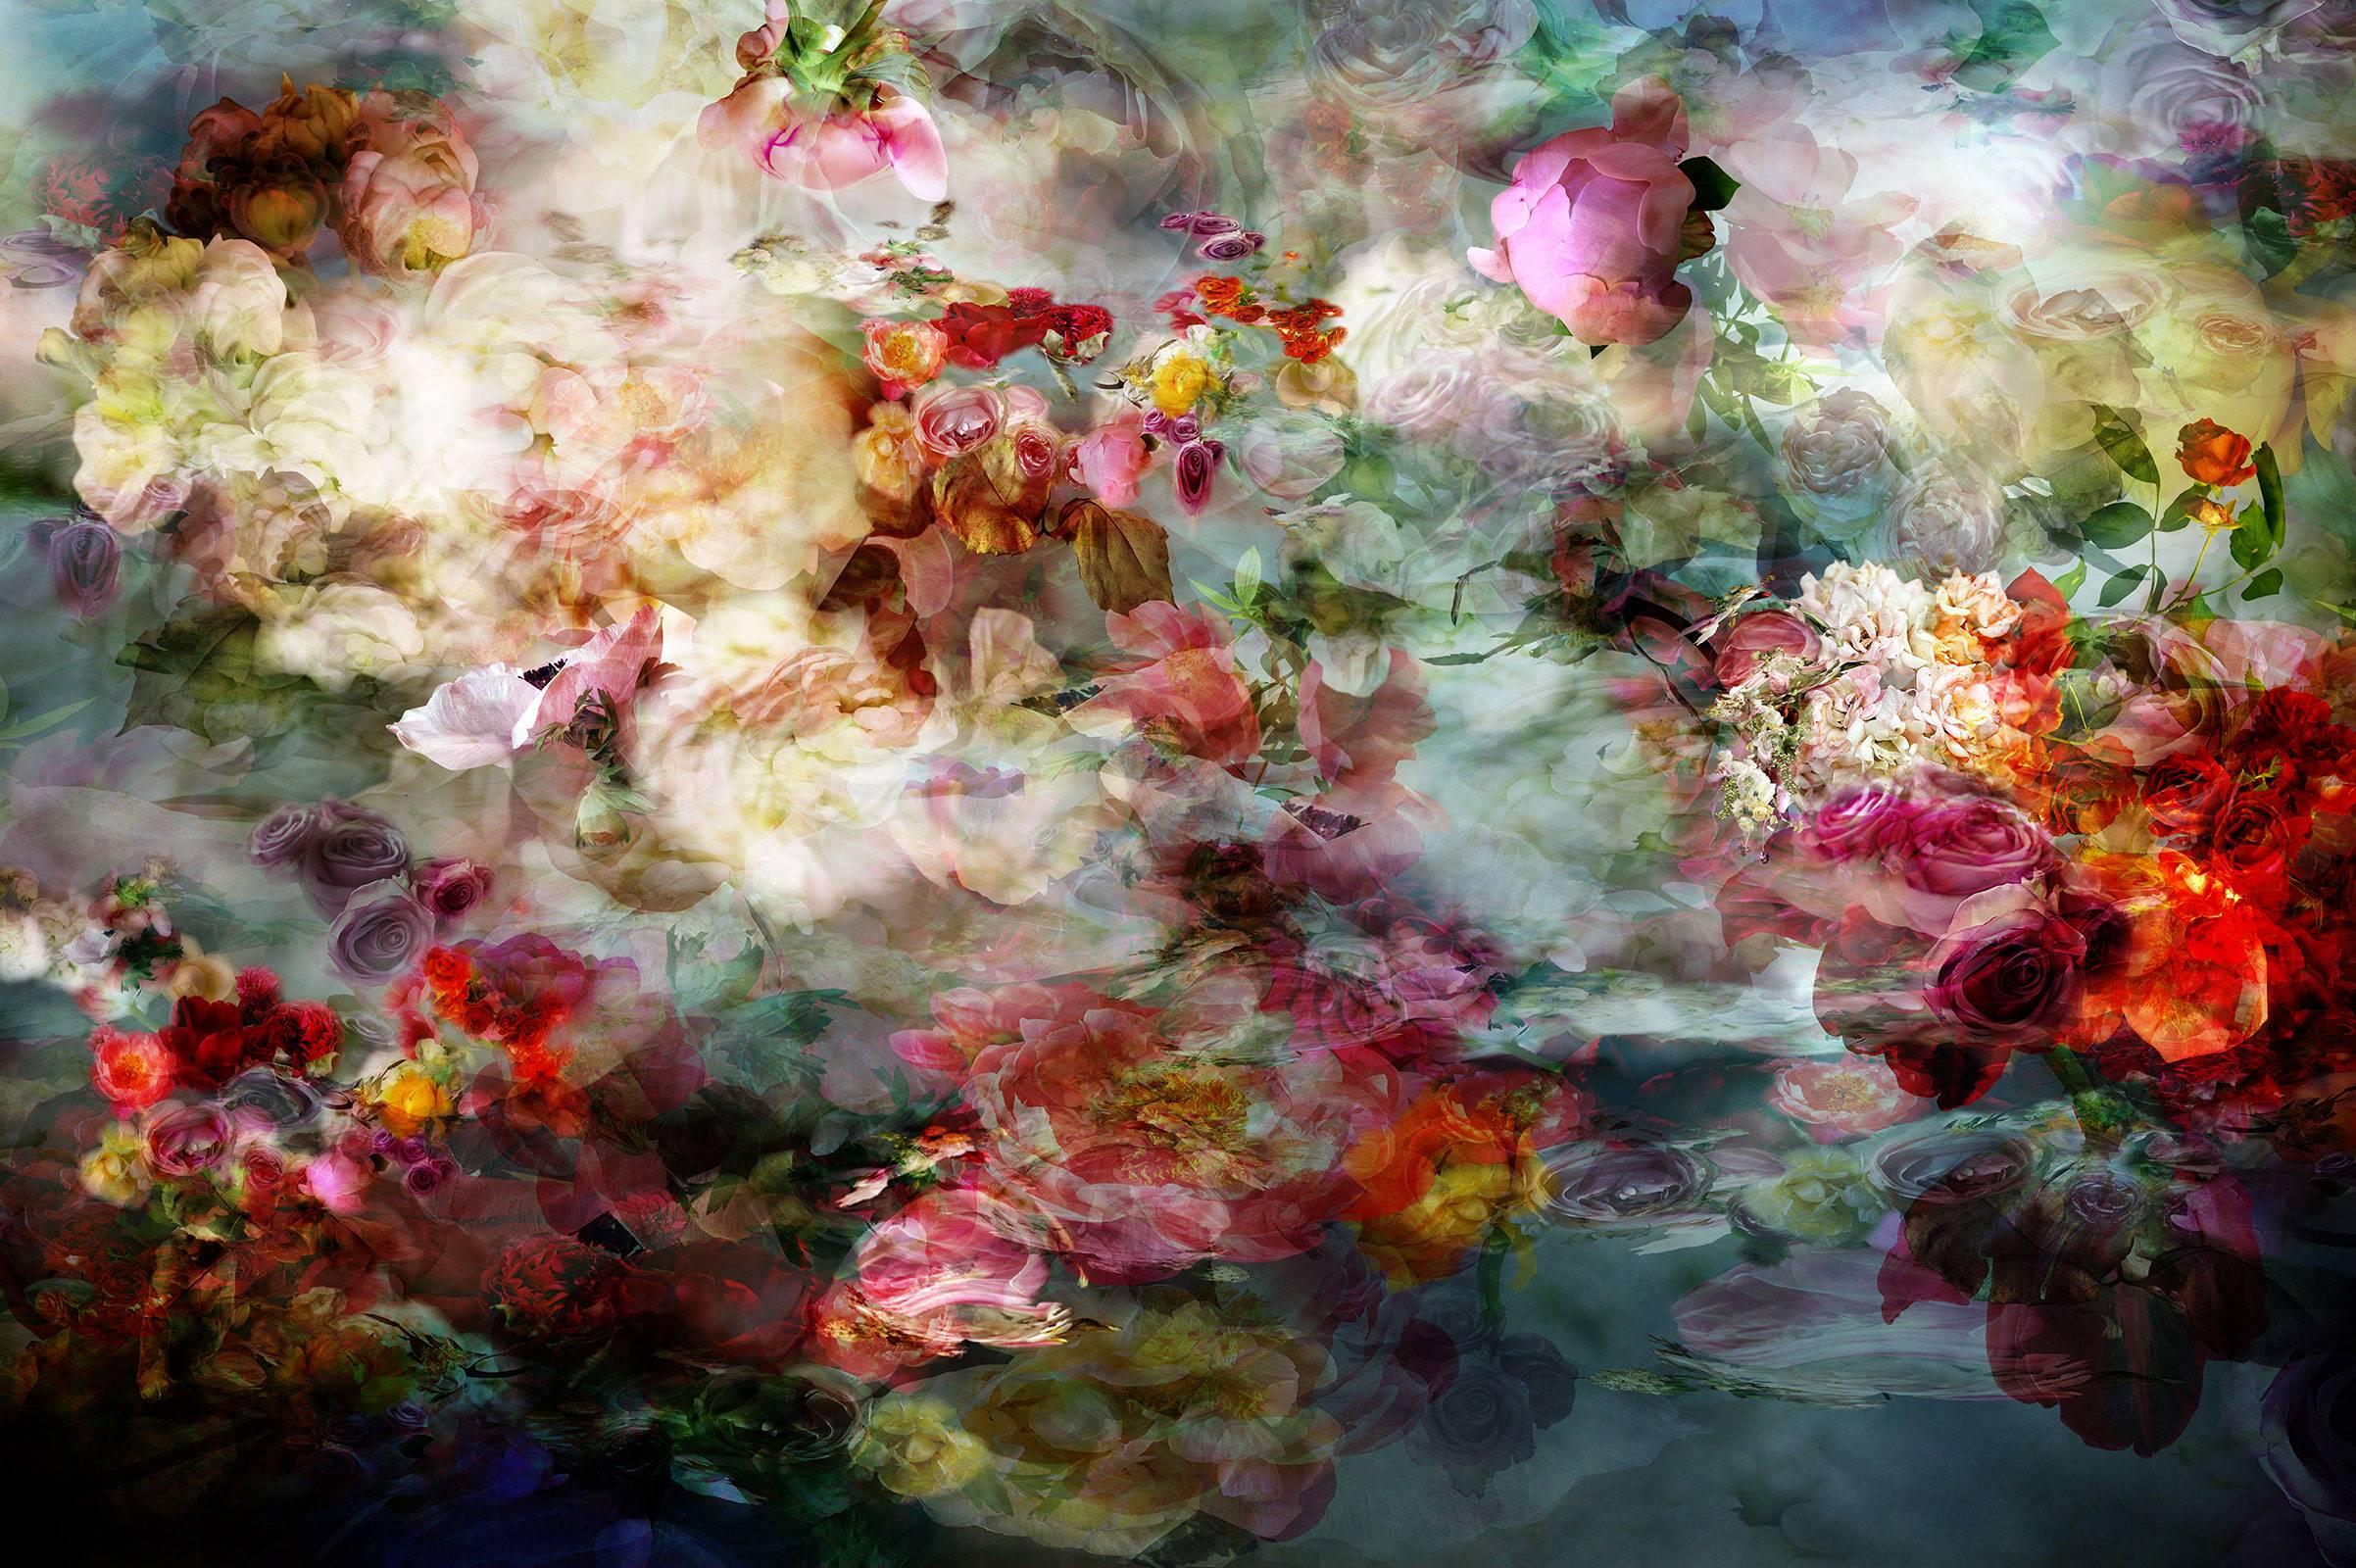 Still-Life Photograph Isabelle Menin - River 10 - Nature morte florale colorée rouge et blanche, photographie contemporaine